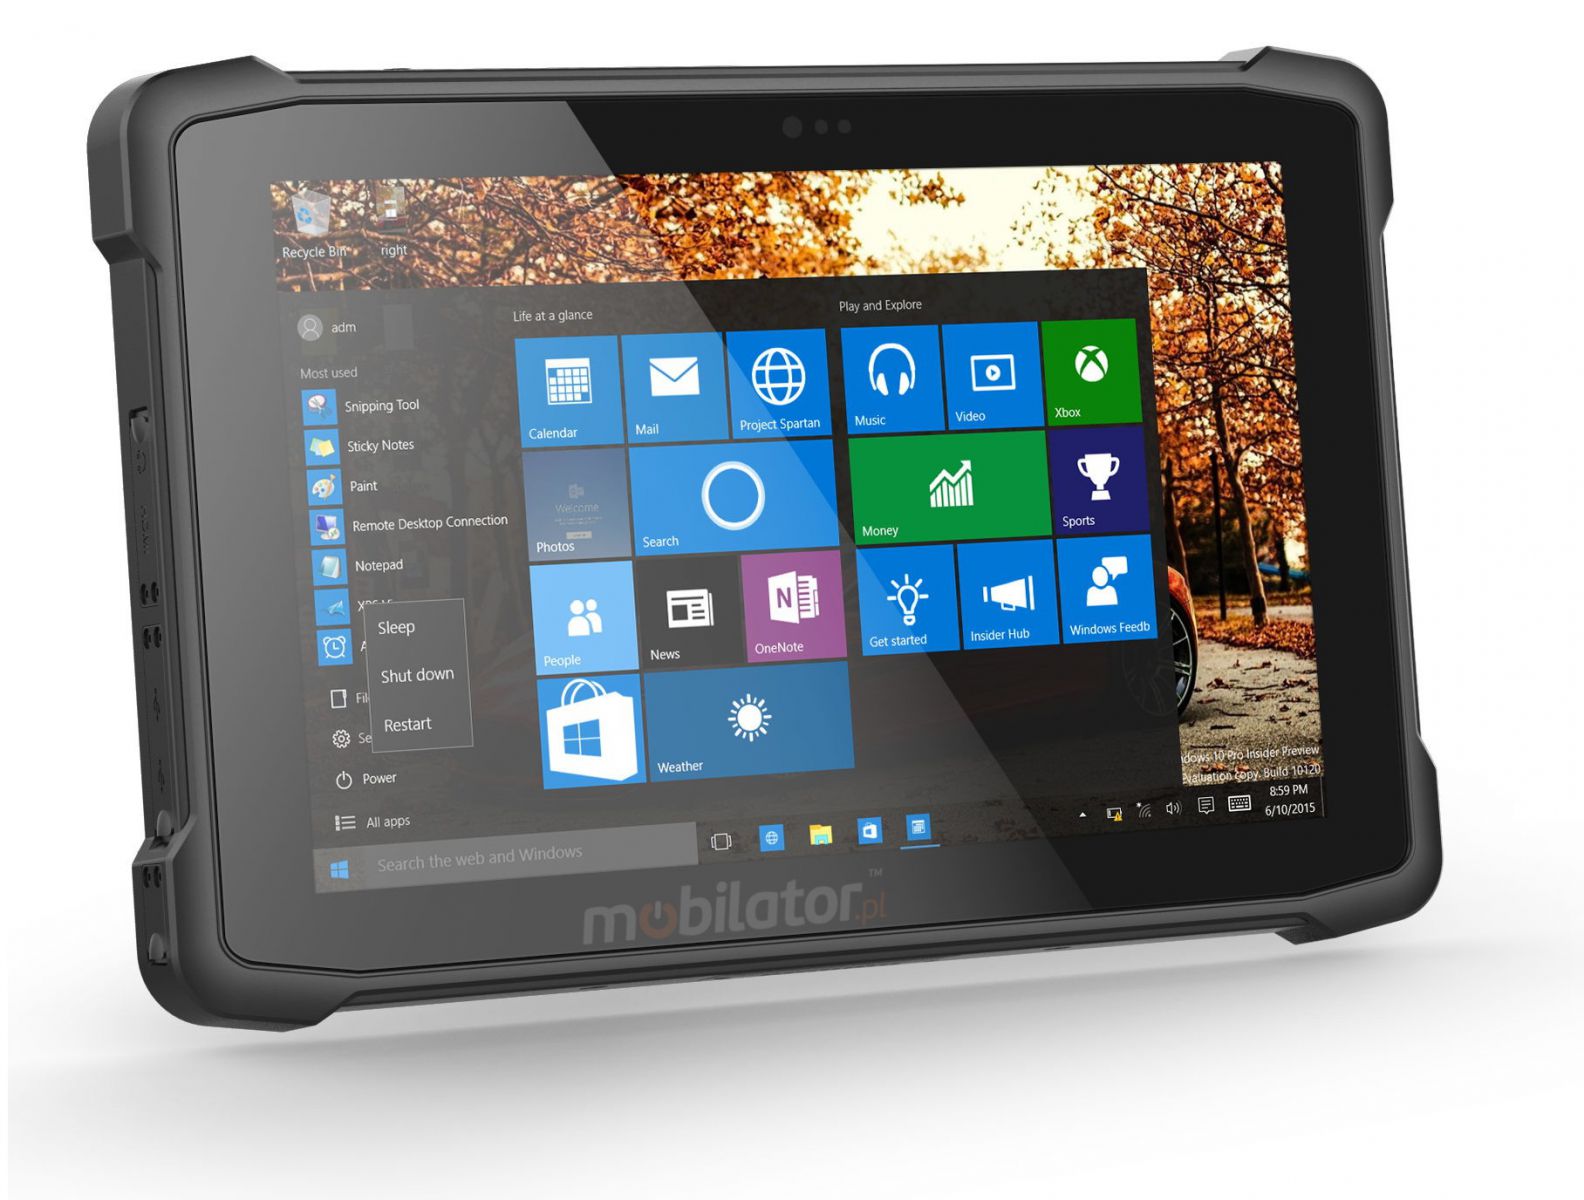 Emdoor I11H v.8 - Wodoodporny dziesiciocalowy tablet z Windows 10 Home, Bluetooth 4.2, 4GB RAM, czytnikiem kodw 2D N3680 Honeywell, 64GB, NFC  i 4G 